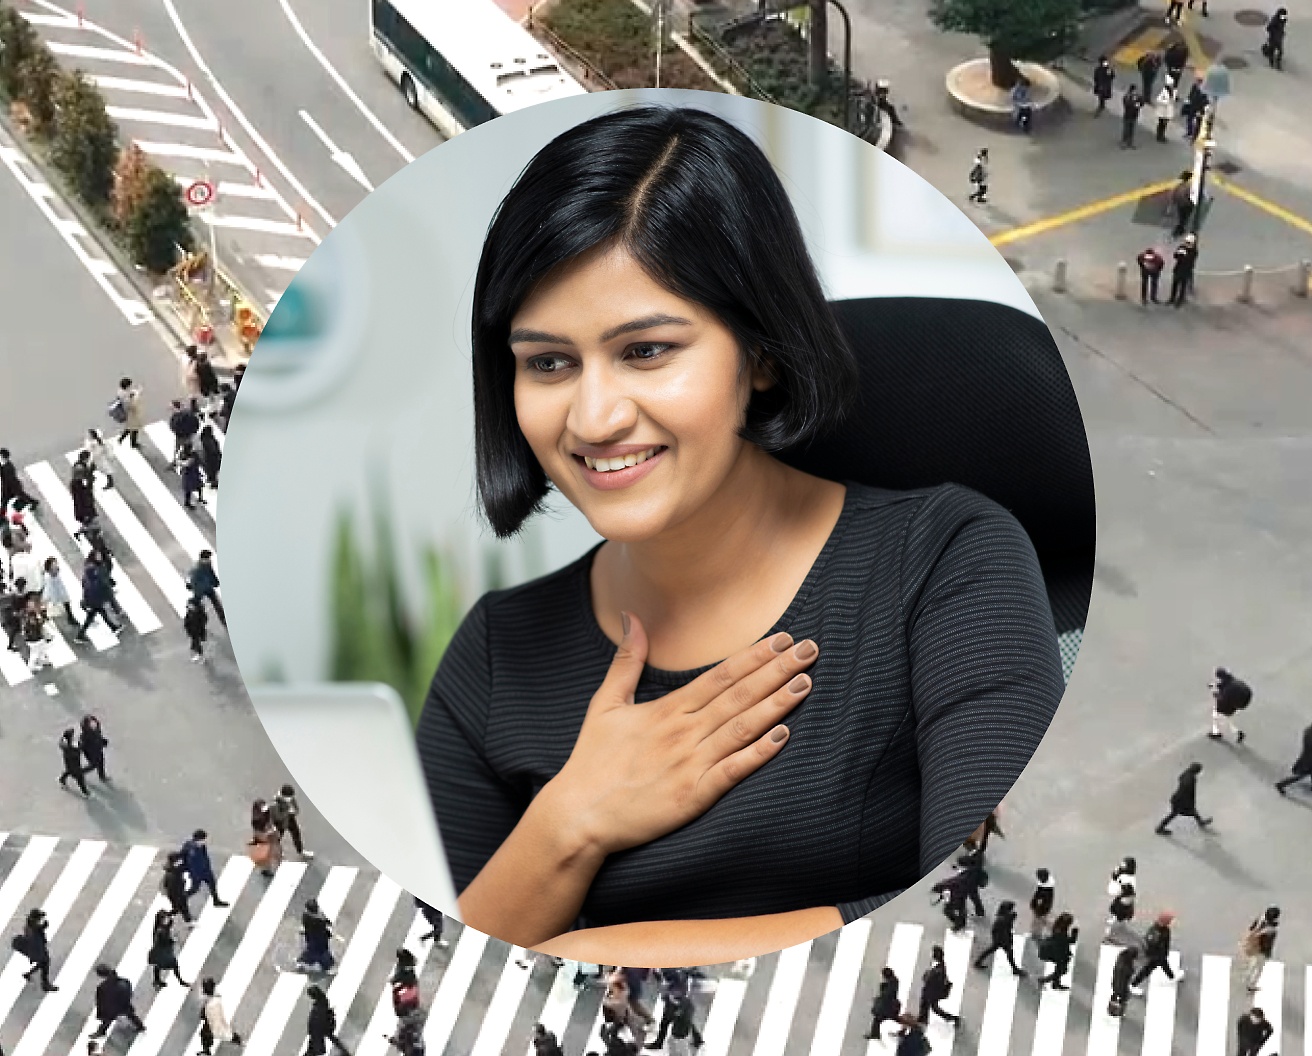 노트북으로 작업하는 동안 가슴에 손을 얹고 있는 여성, 배경 이미지는 사람들이 지나가는 도로 교차로로 설정